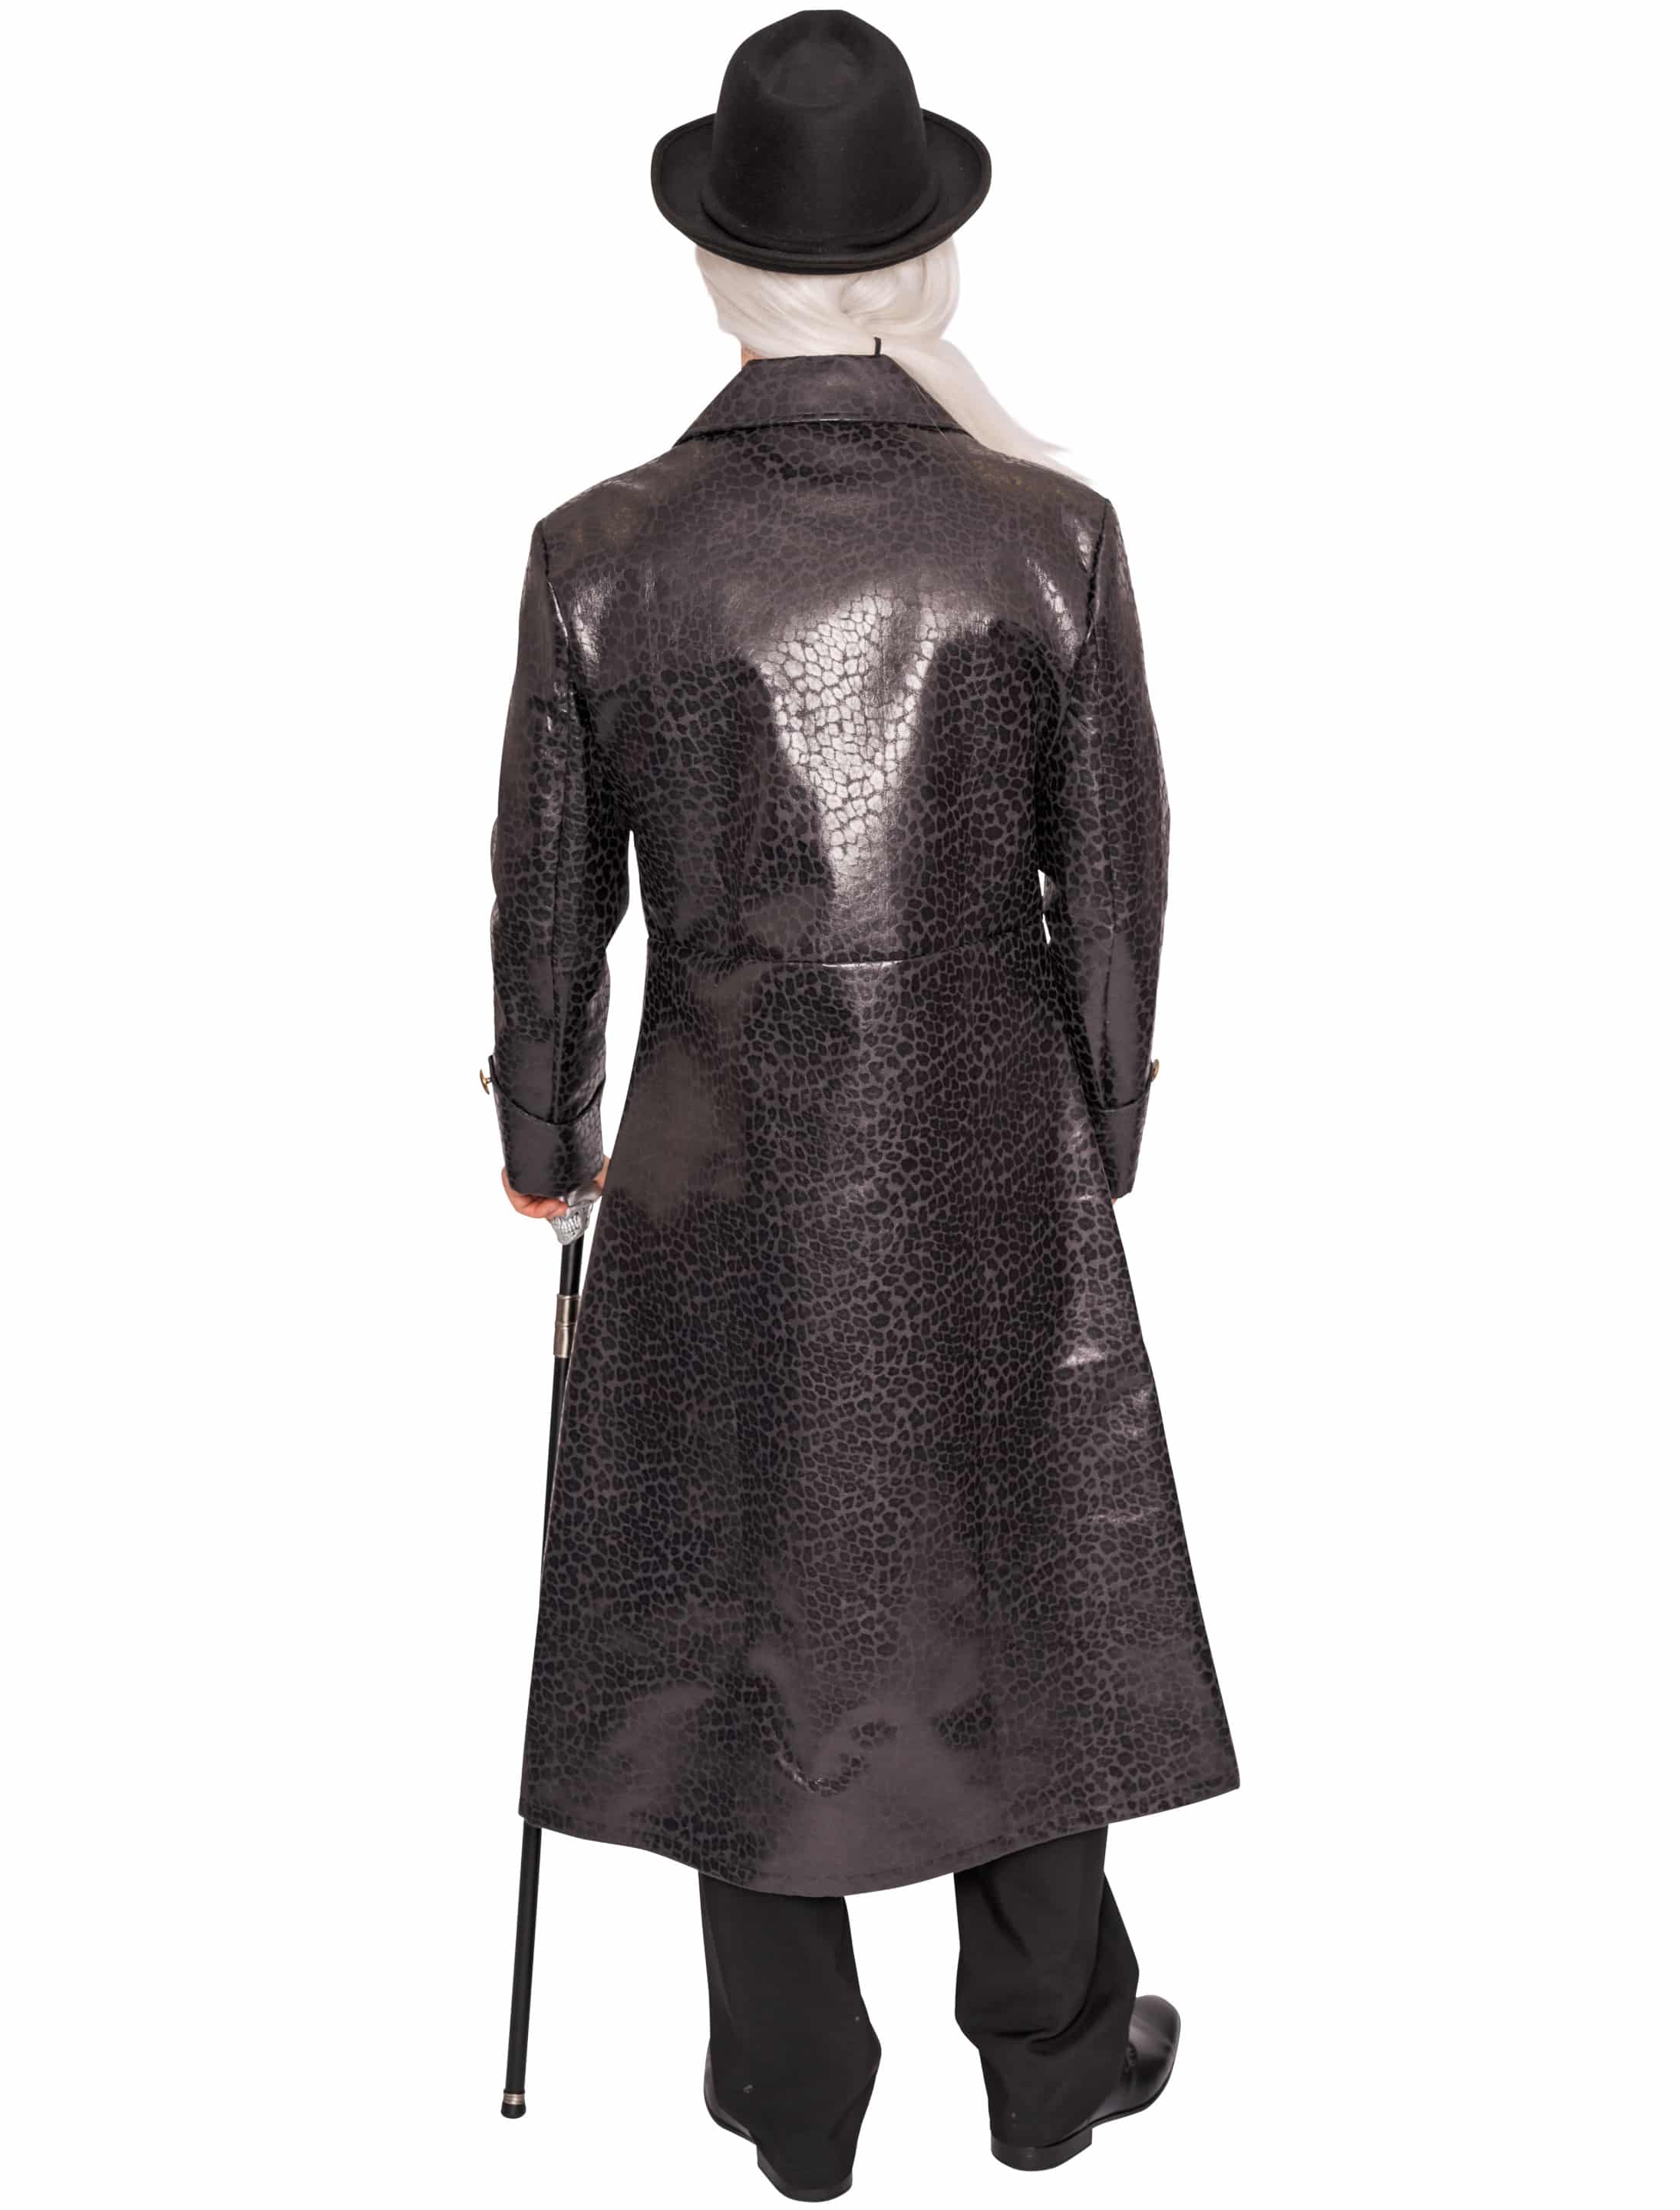 Mantel mit Schnallen Herren schwarz XL